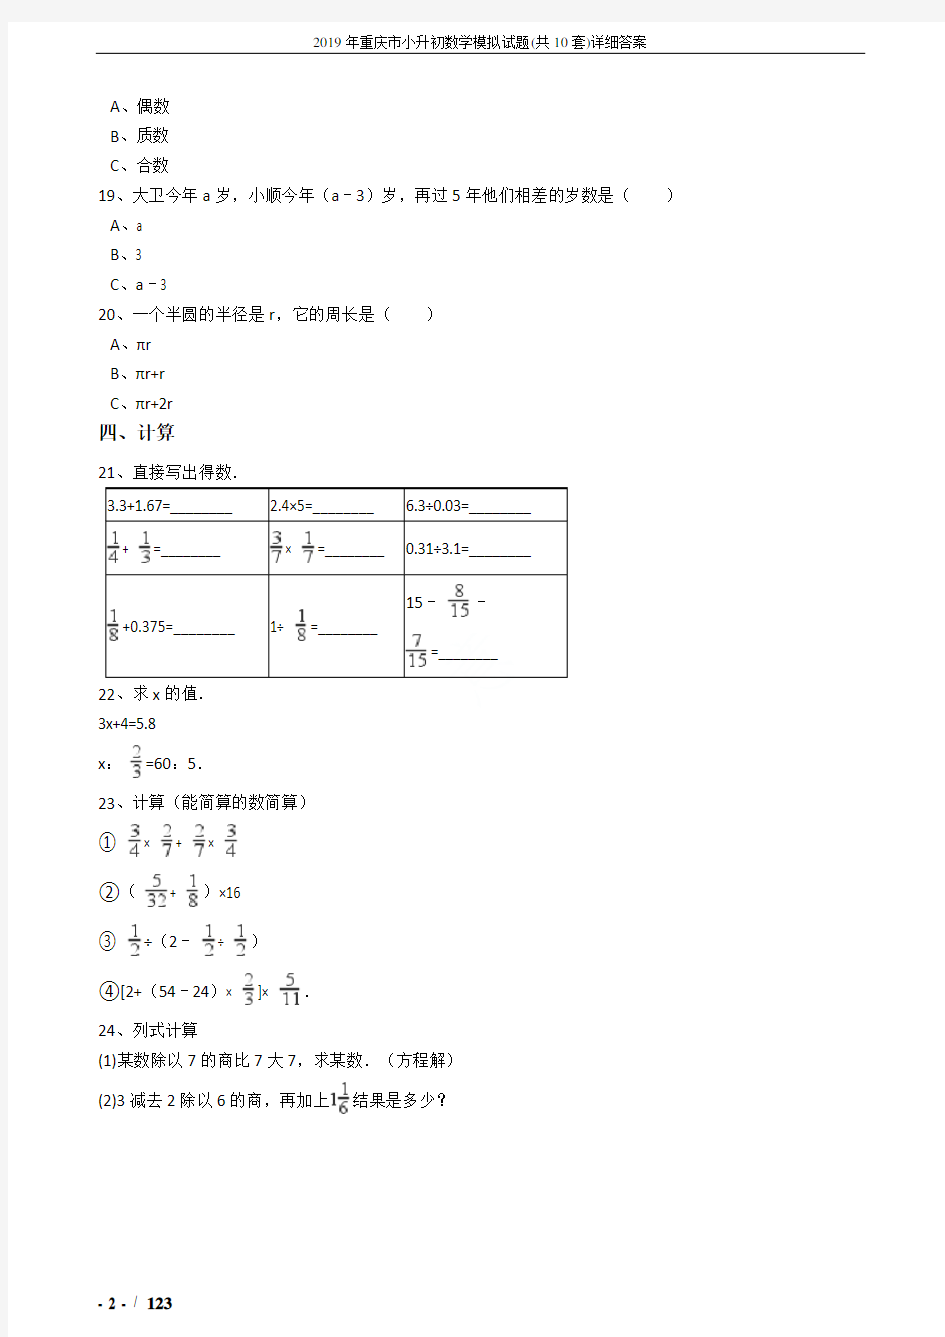 2019年重庆市小升初数学模拟试题(共10套)详细答案